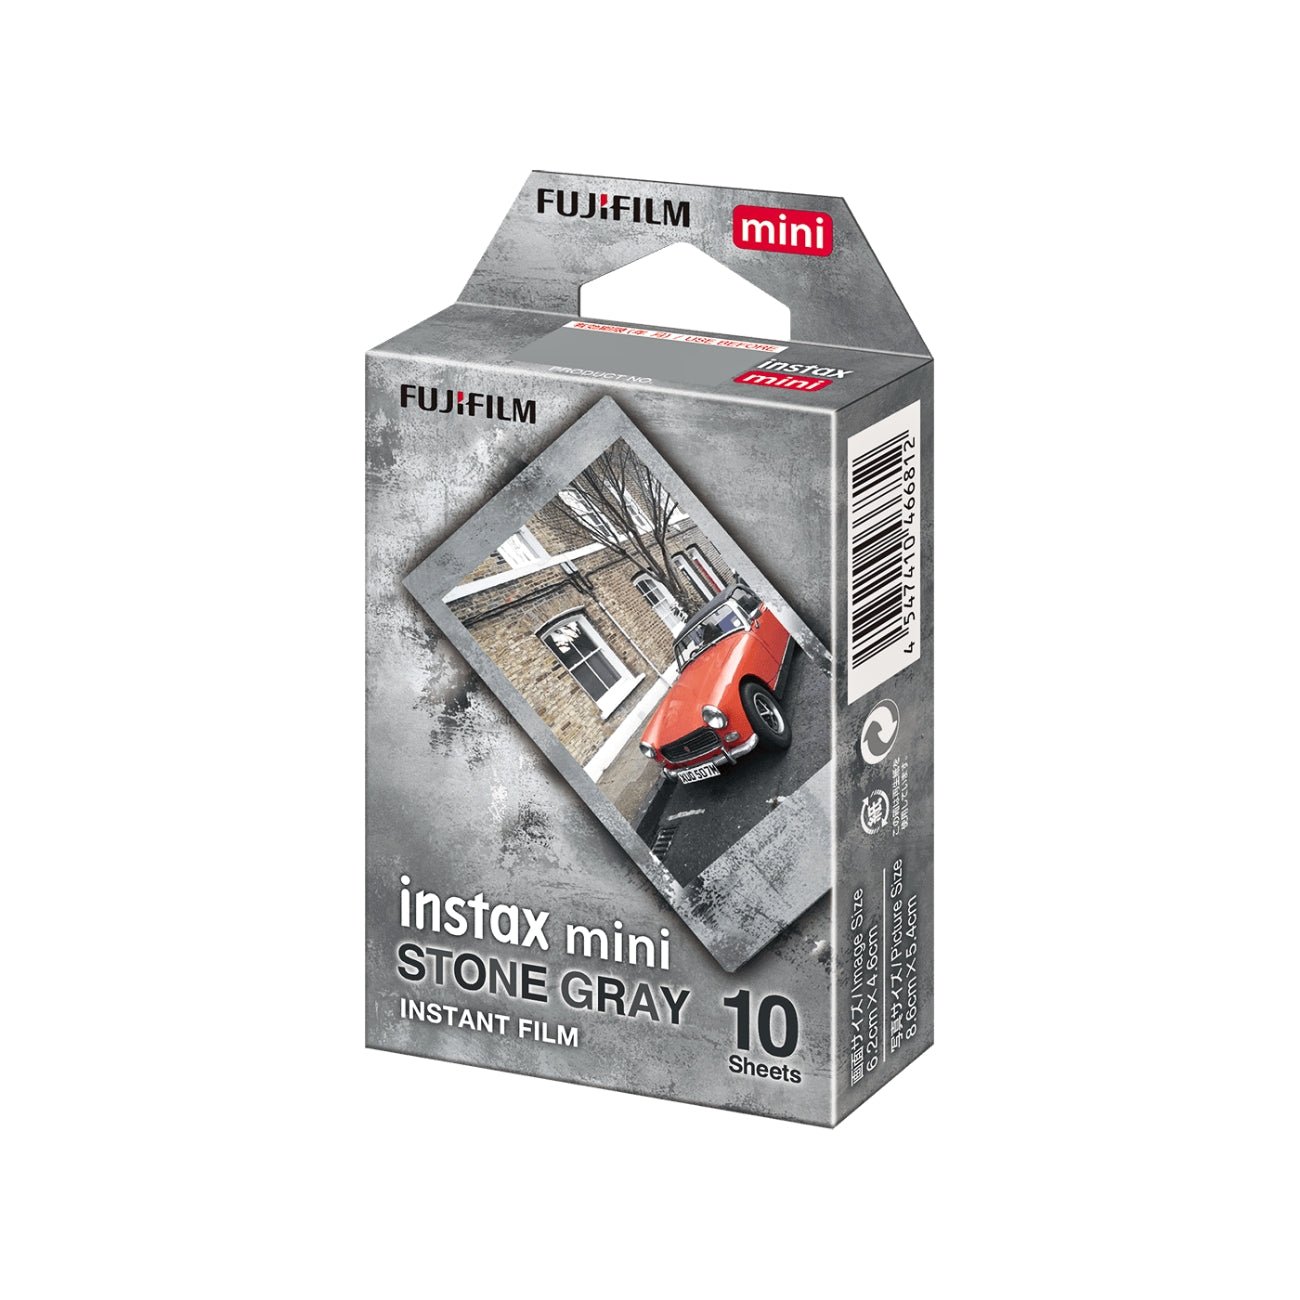 FUJIFILM INSTAX MINI Stone Gray Instant Film (10 Exposures)